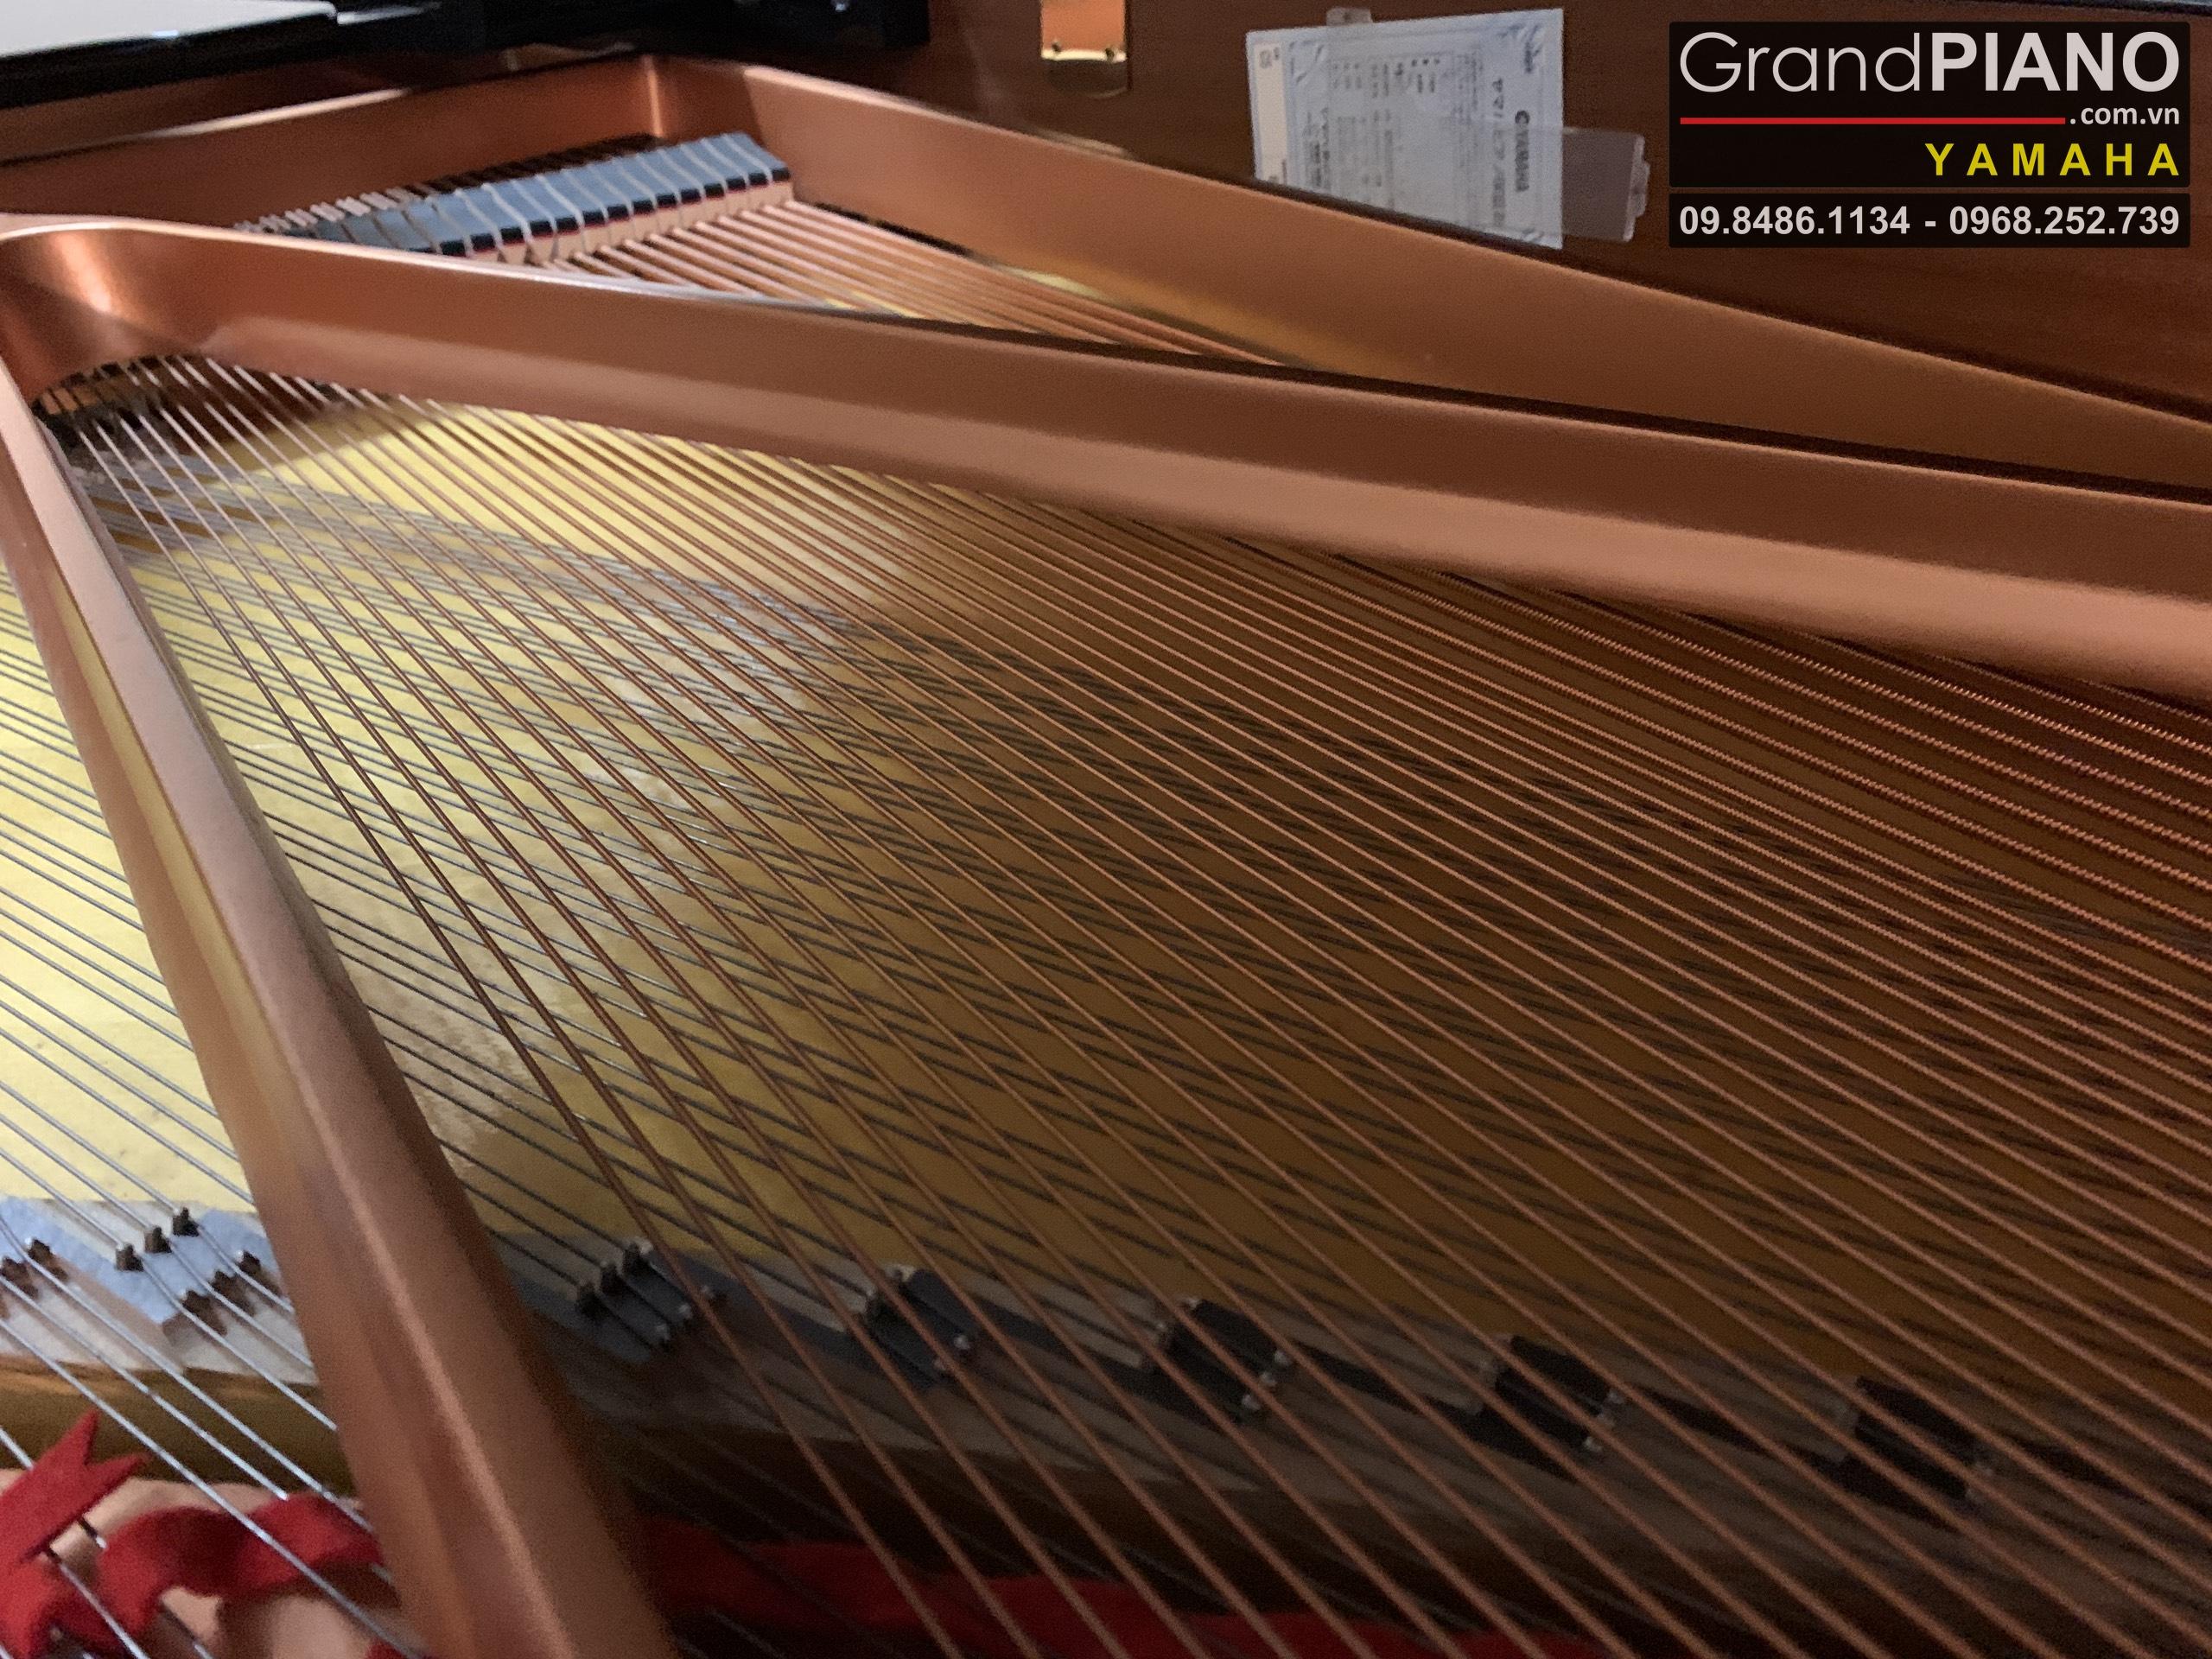 Dan-Grand-PIANO-YAMAHA-C5-Seri6223471.-e7ead993bacf44911dde27_GrandPIANO_result.jpg